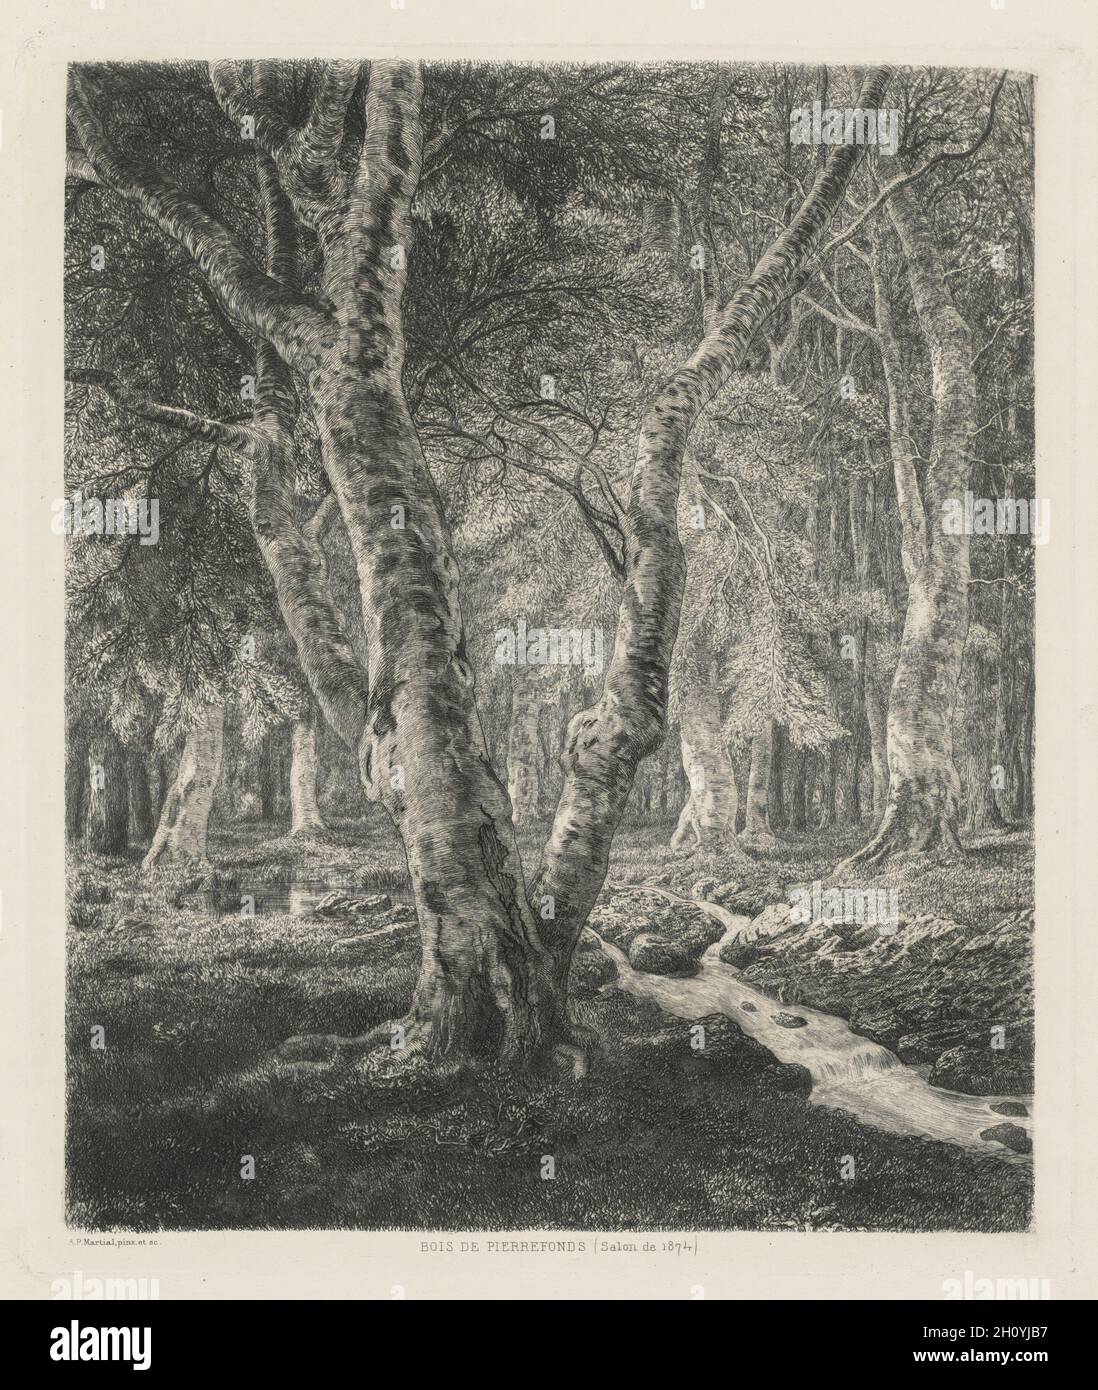 Bois de PIERREFONDS, 1874. Adolphe Théodore Jules Potémont Marcial (Francés, 1828-1883). Aguafuerte; hoja: 42,7 x 31,5 cm (16 13/16 x 12 3/8 pulg.); platemark: 30 x 25,6 cm (11 13/16 x 10 1/16 pulg.). Foto de stock